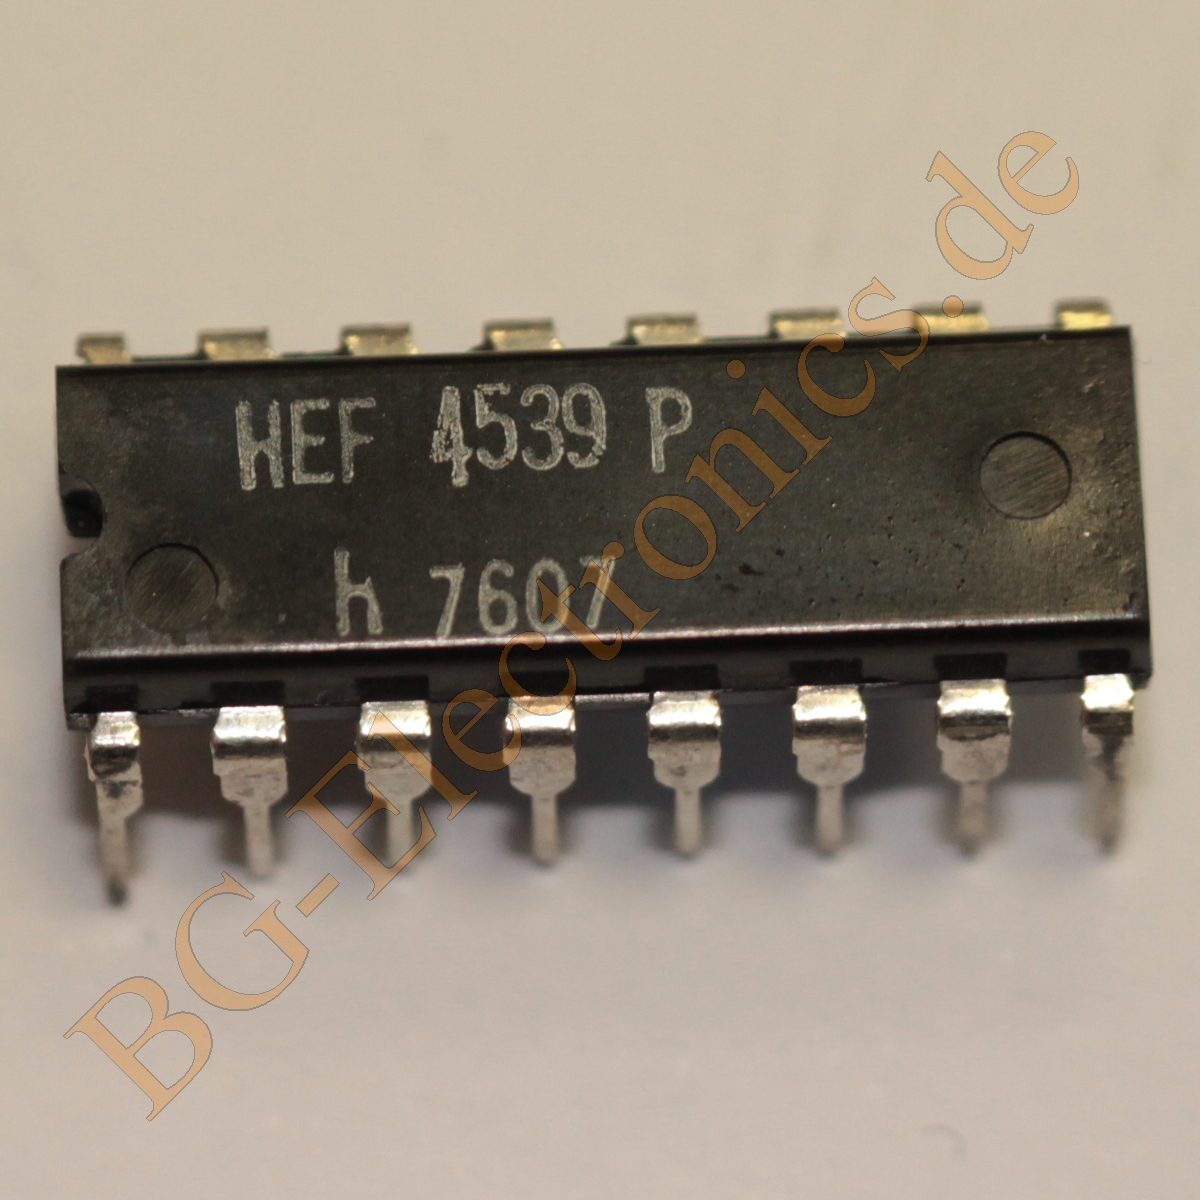 HEF4539P